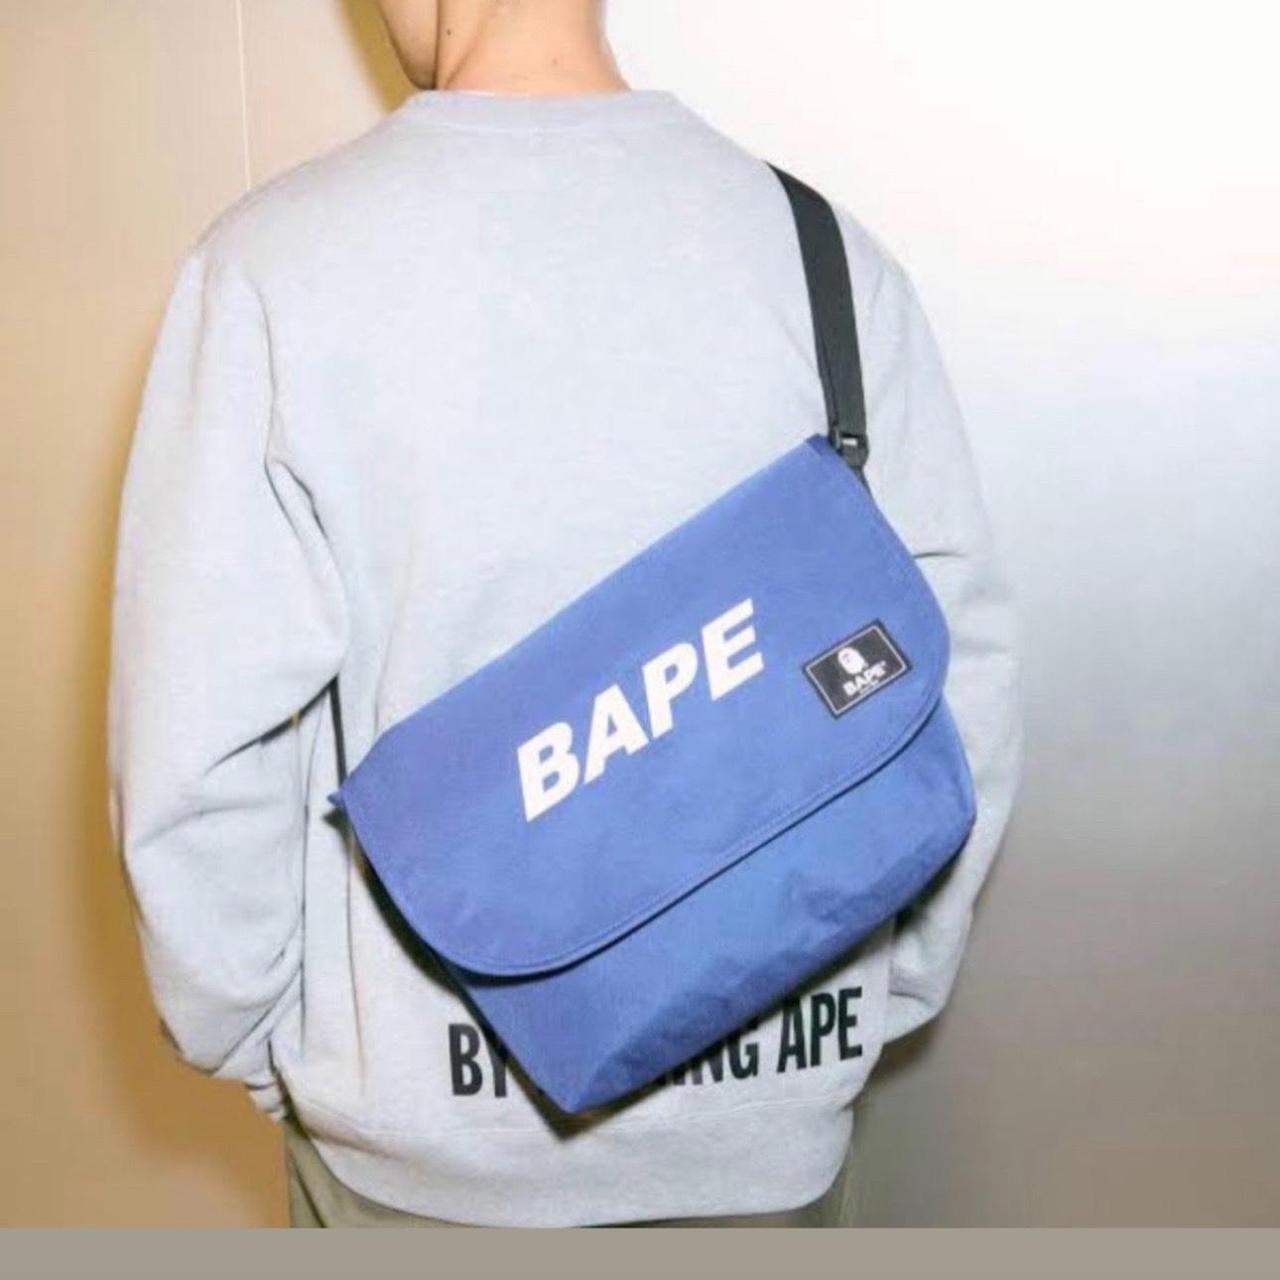 Bape Shoulder Bag Brand New Bape Shoulder bag from - Depop